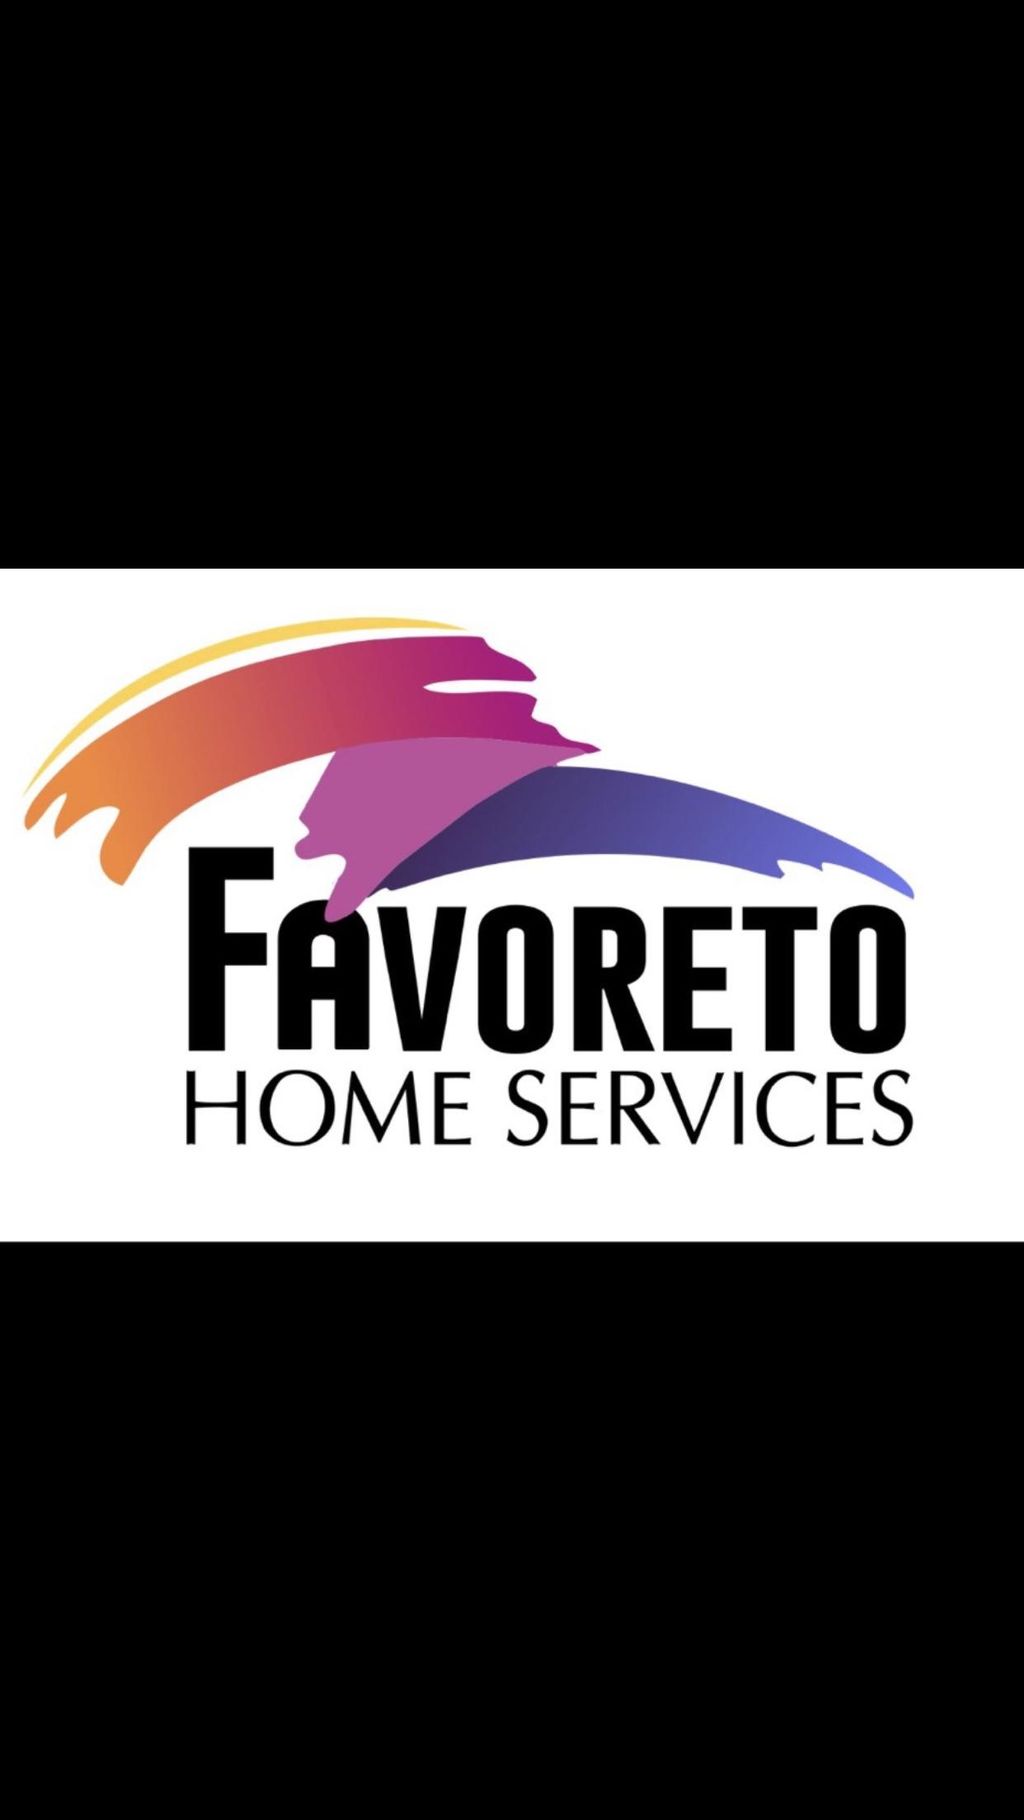 Favoreto Home Services